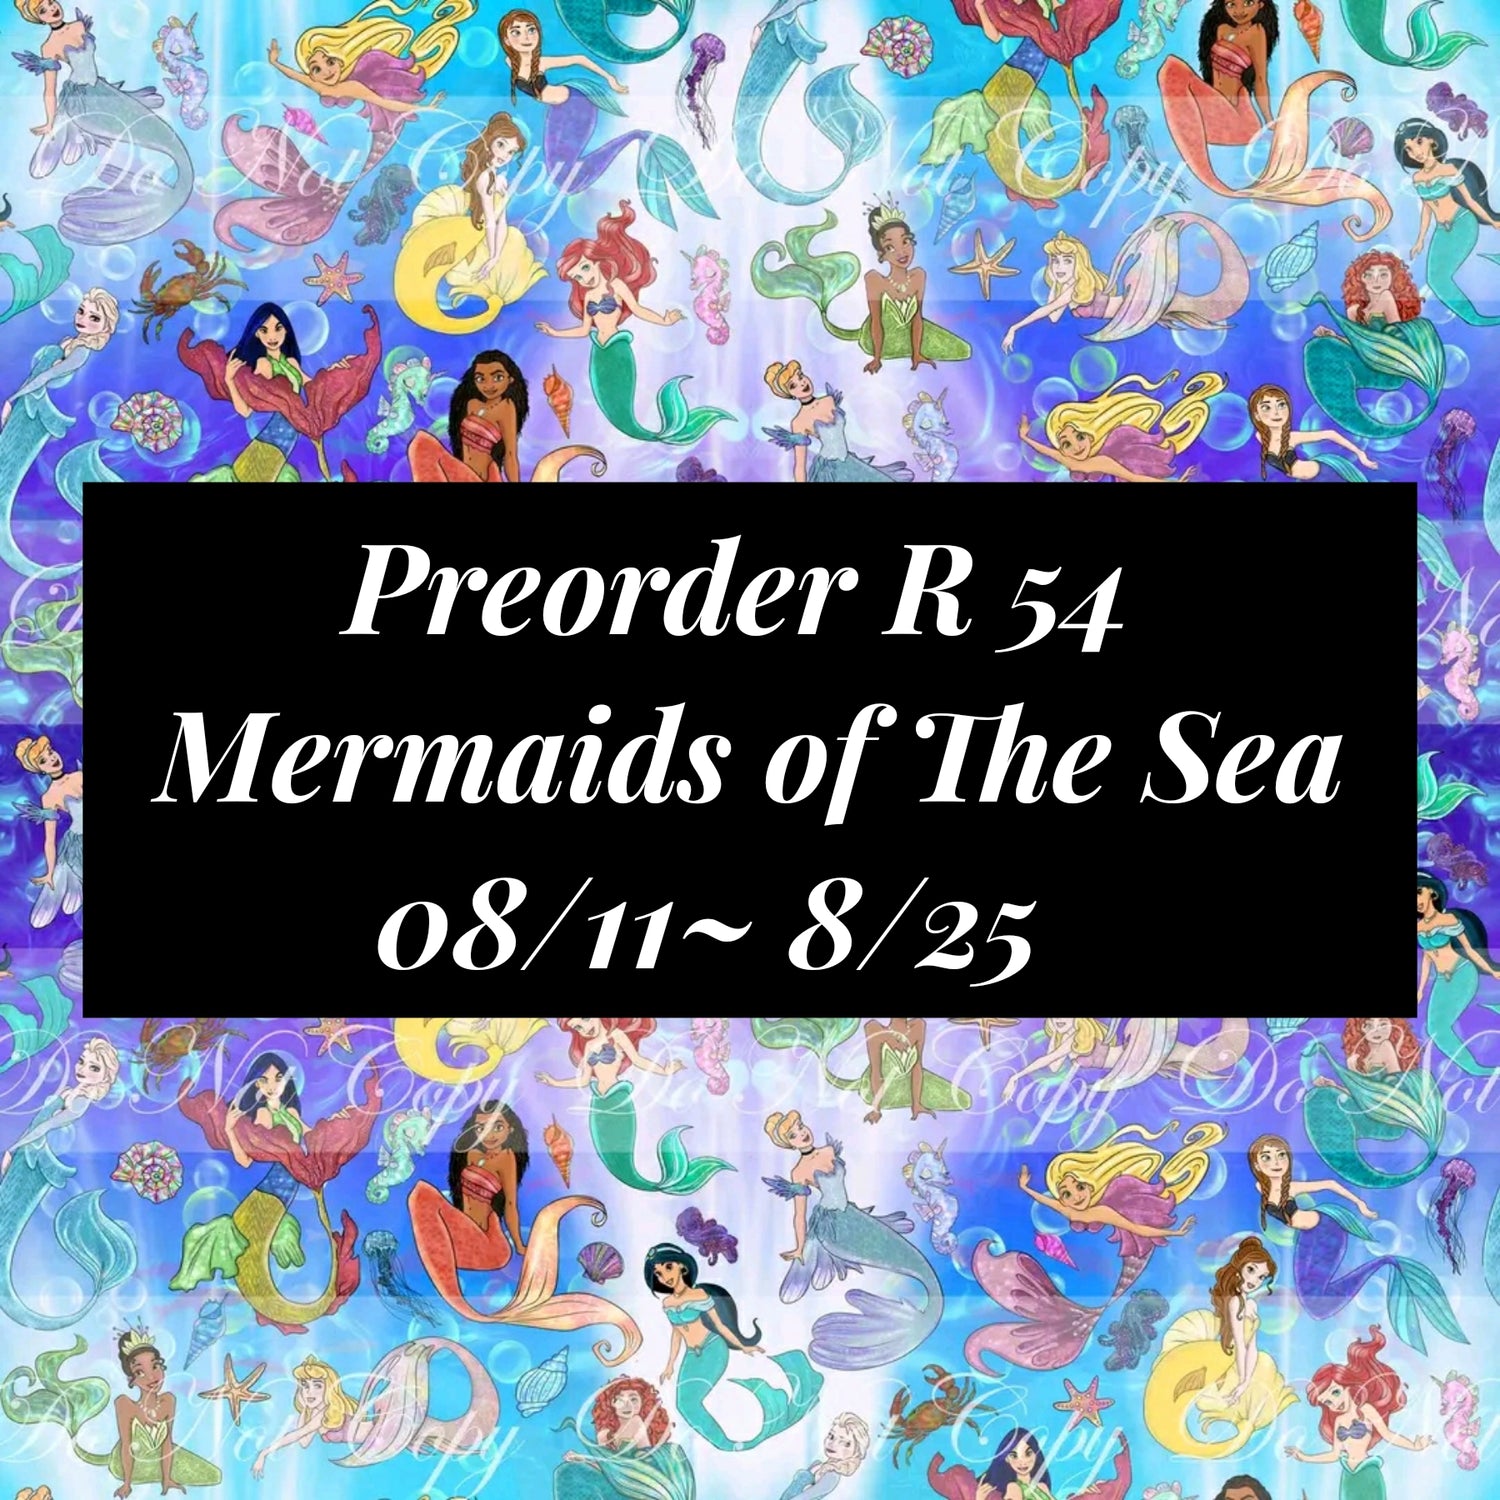 Preorder R54 - Mermaids of The Sea